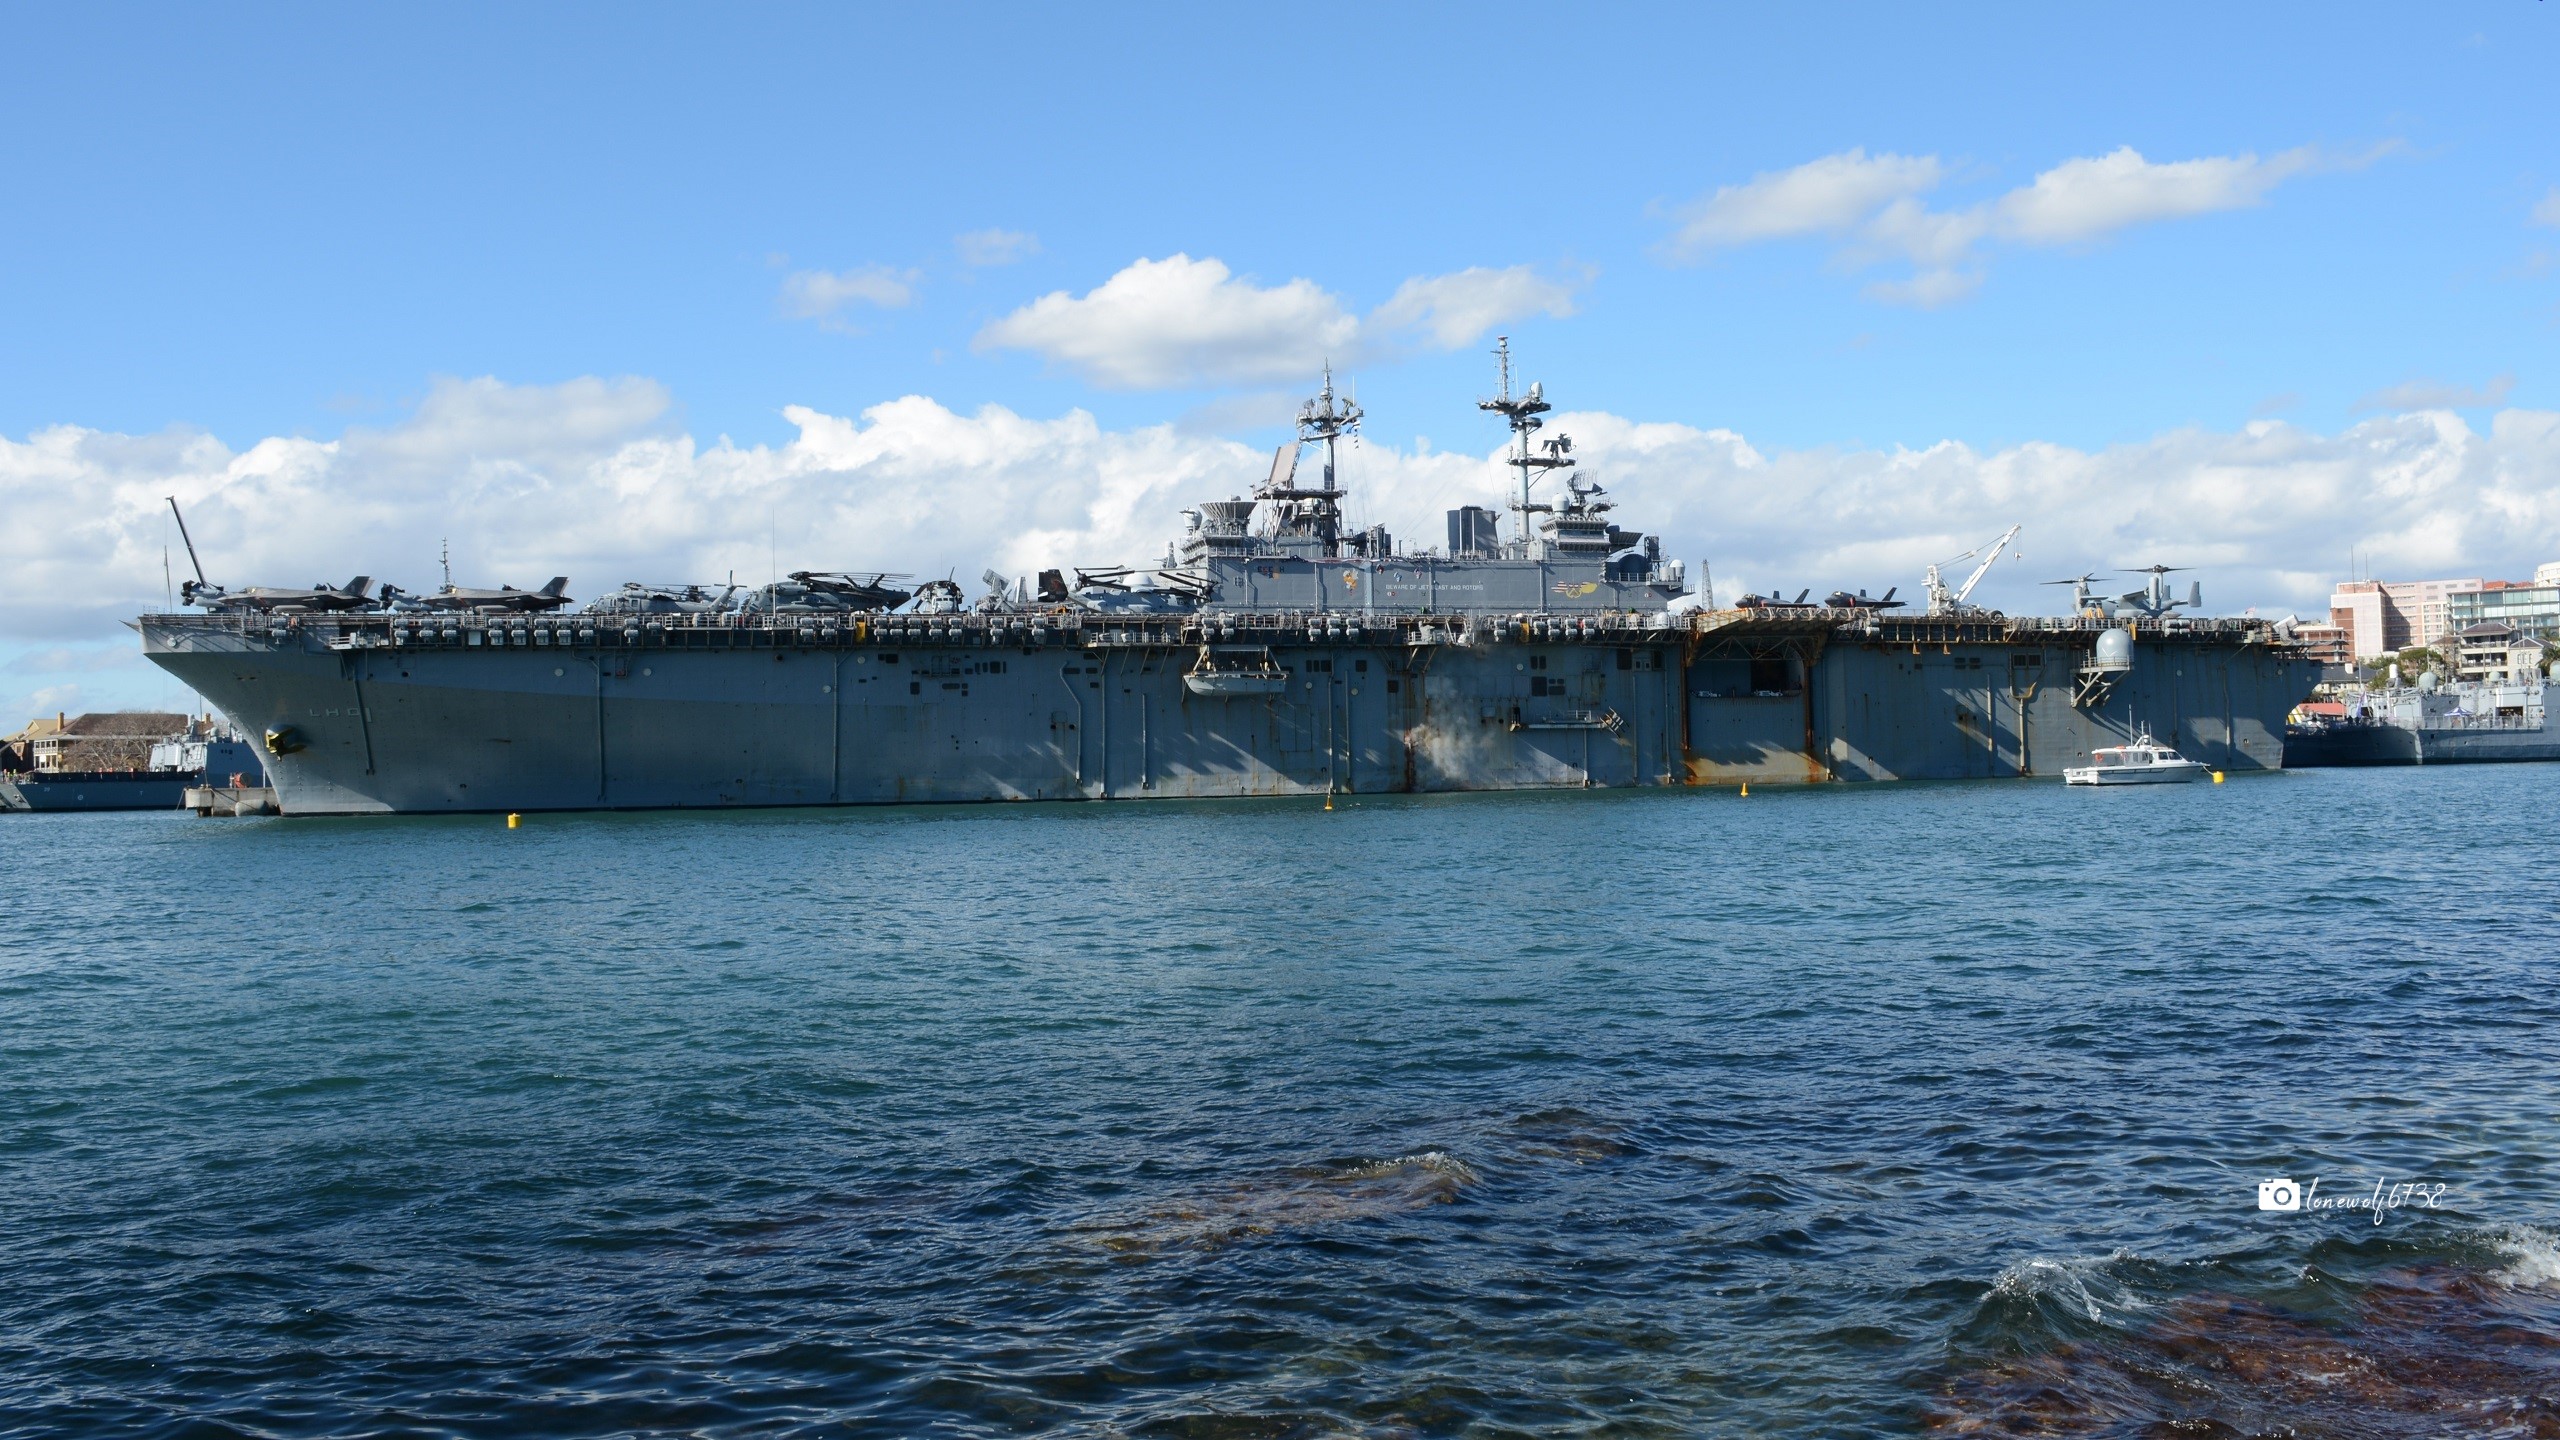 Скачать обои Военно Морской Флот Соединённых Штатов на телефон бесплатно